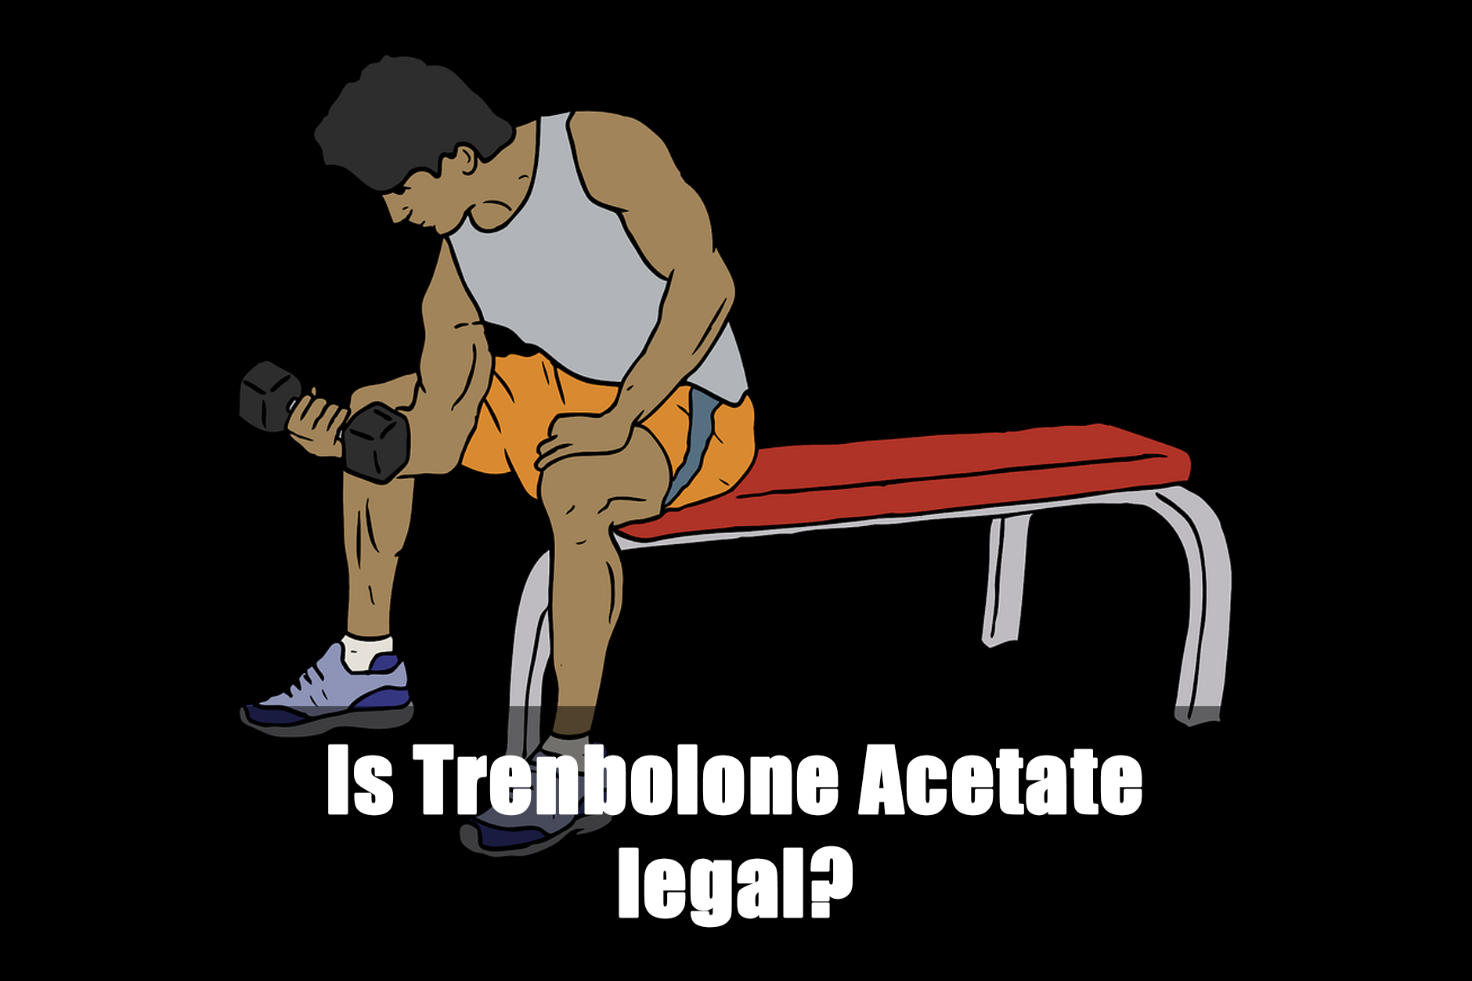 Is Trenbolone Acetate legal